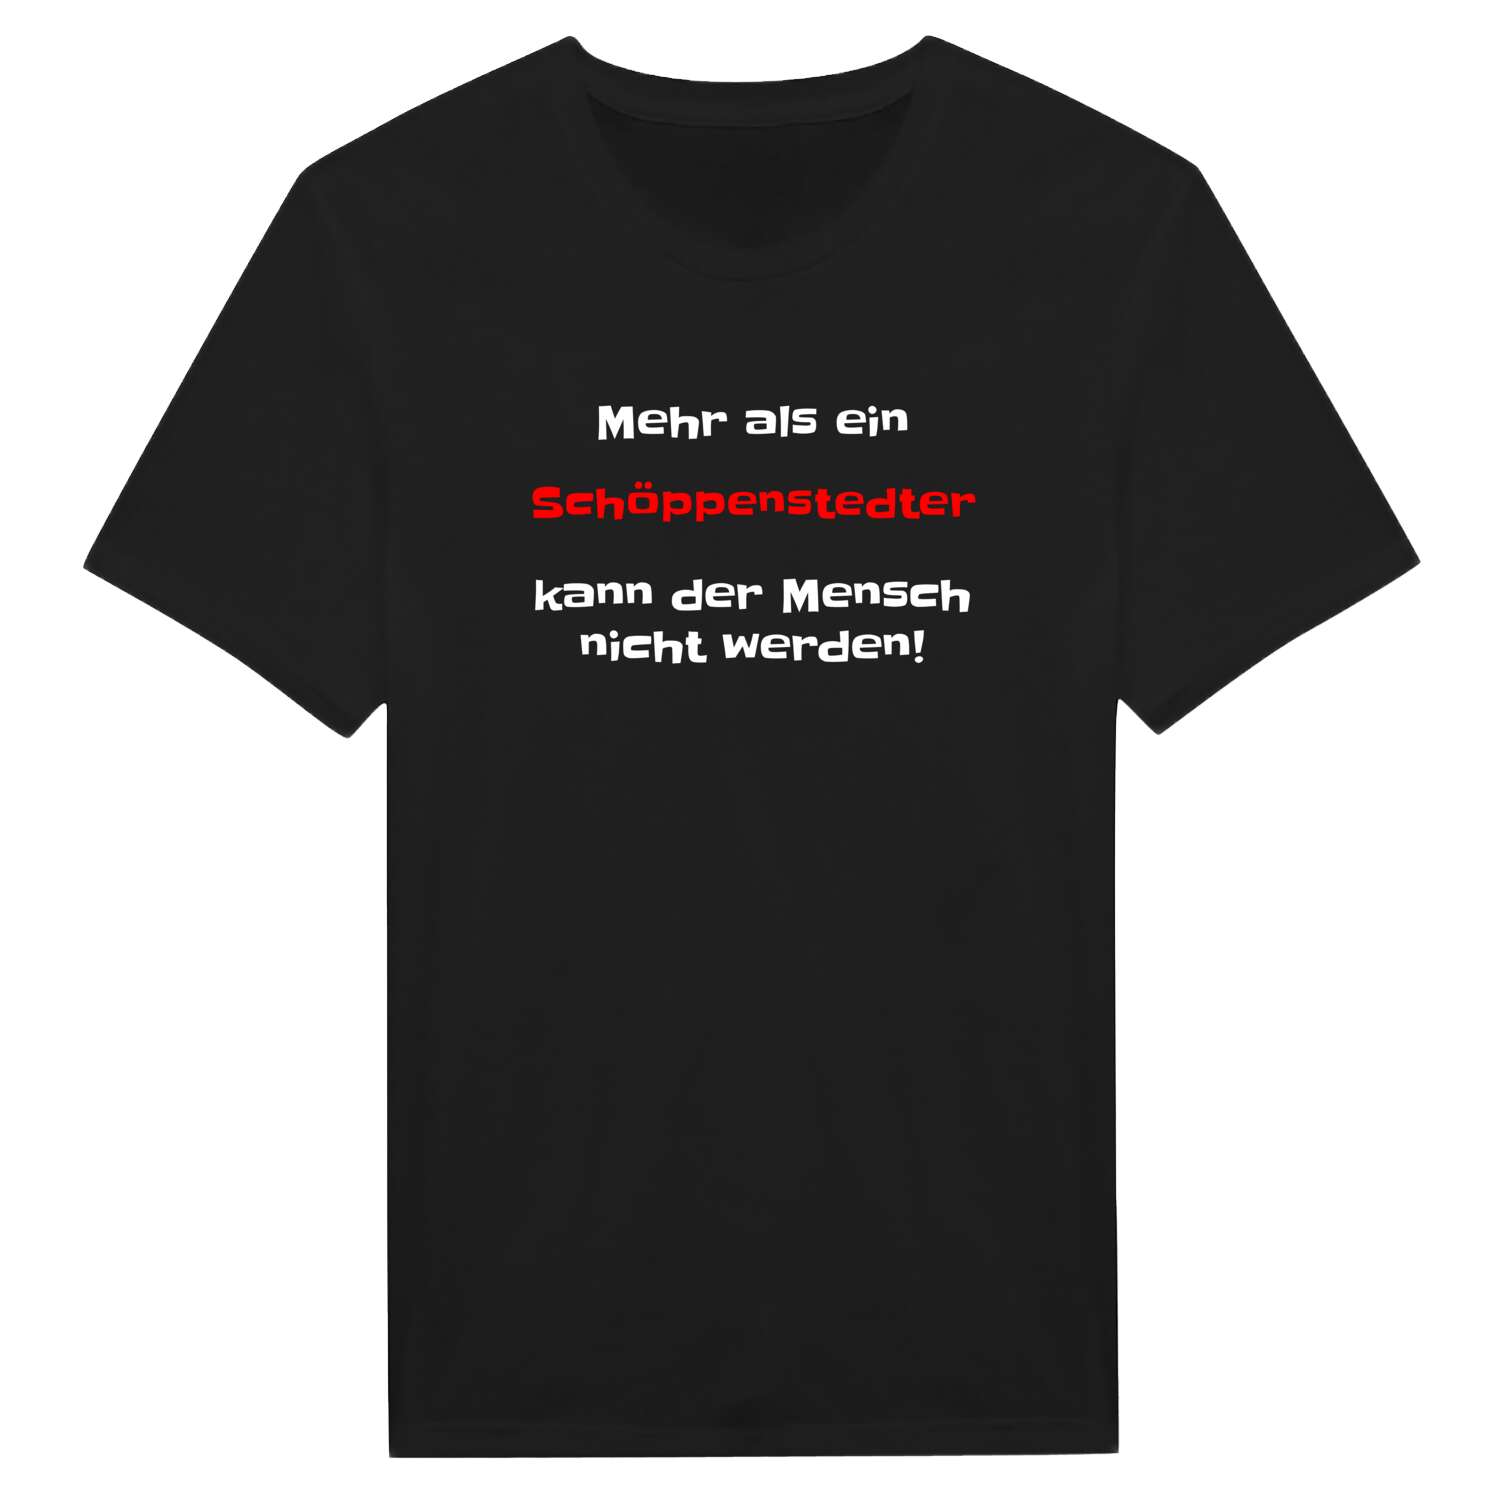 Schöppenstedt T-Shirt »Mehr als ein«